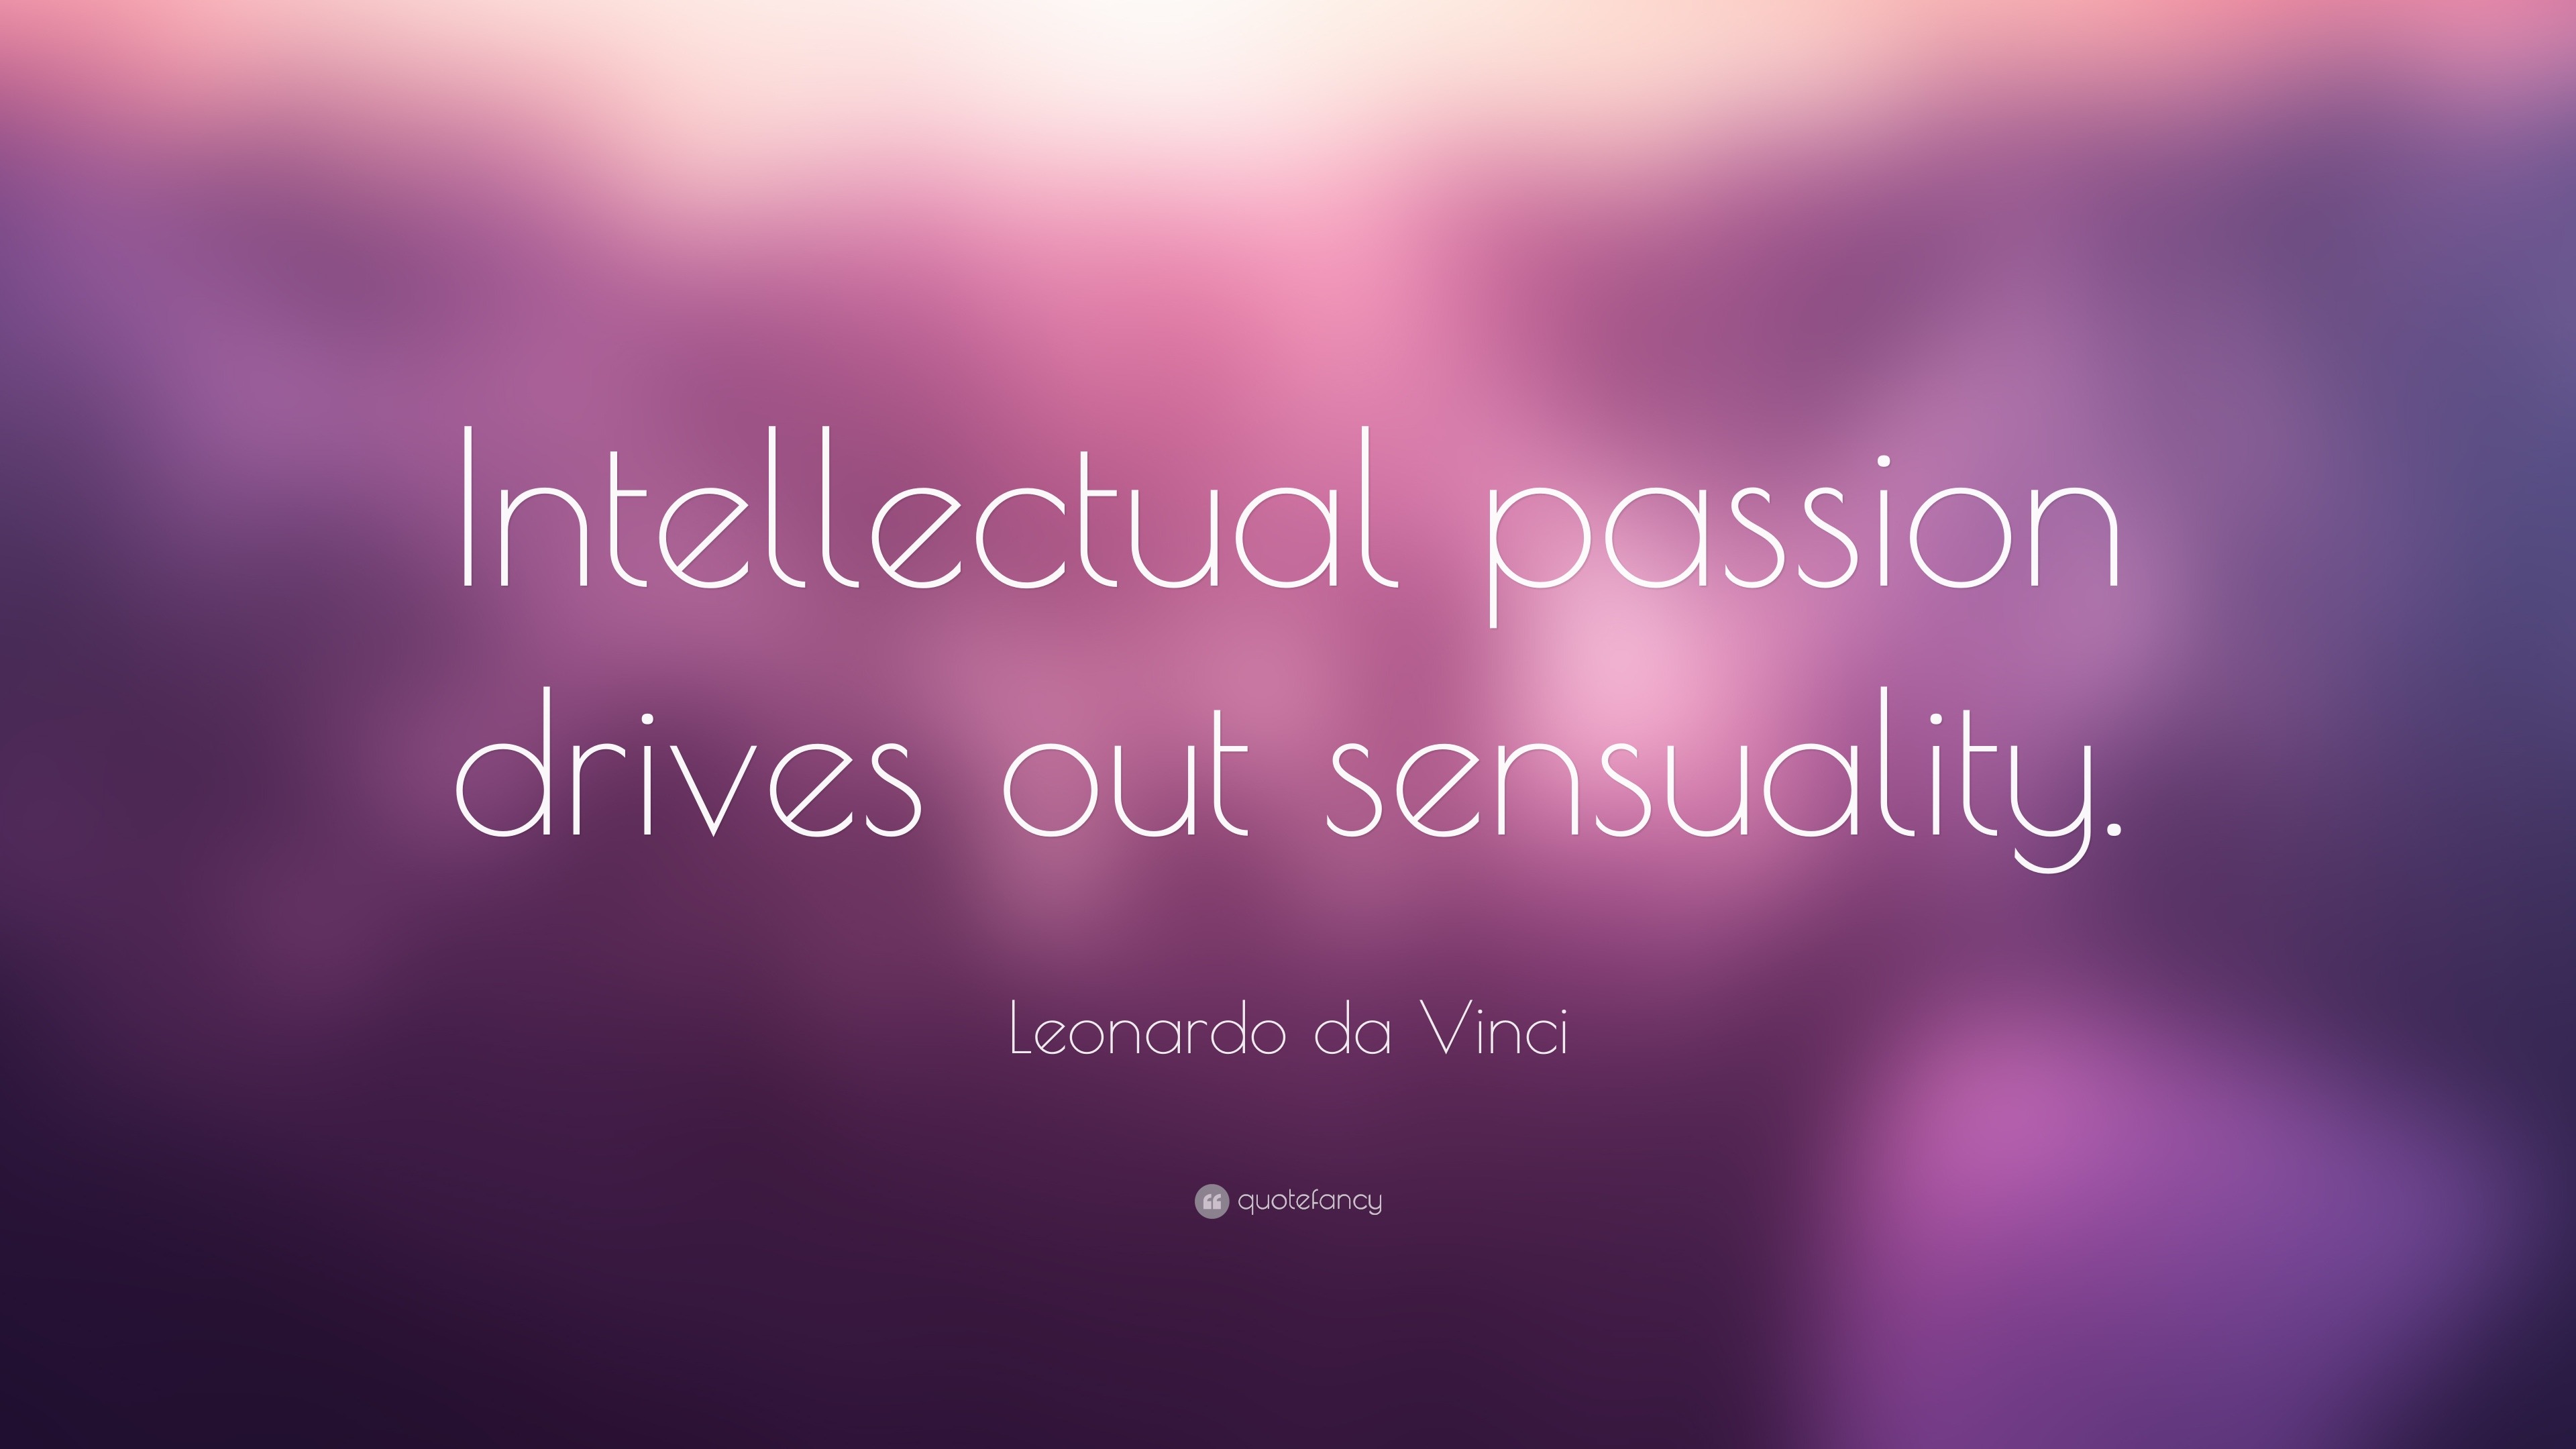 Leonardo da Vinci Quote: "Intellectual passion drives out ...